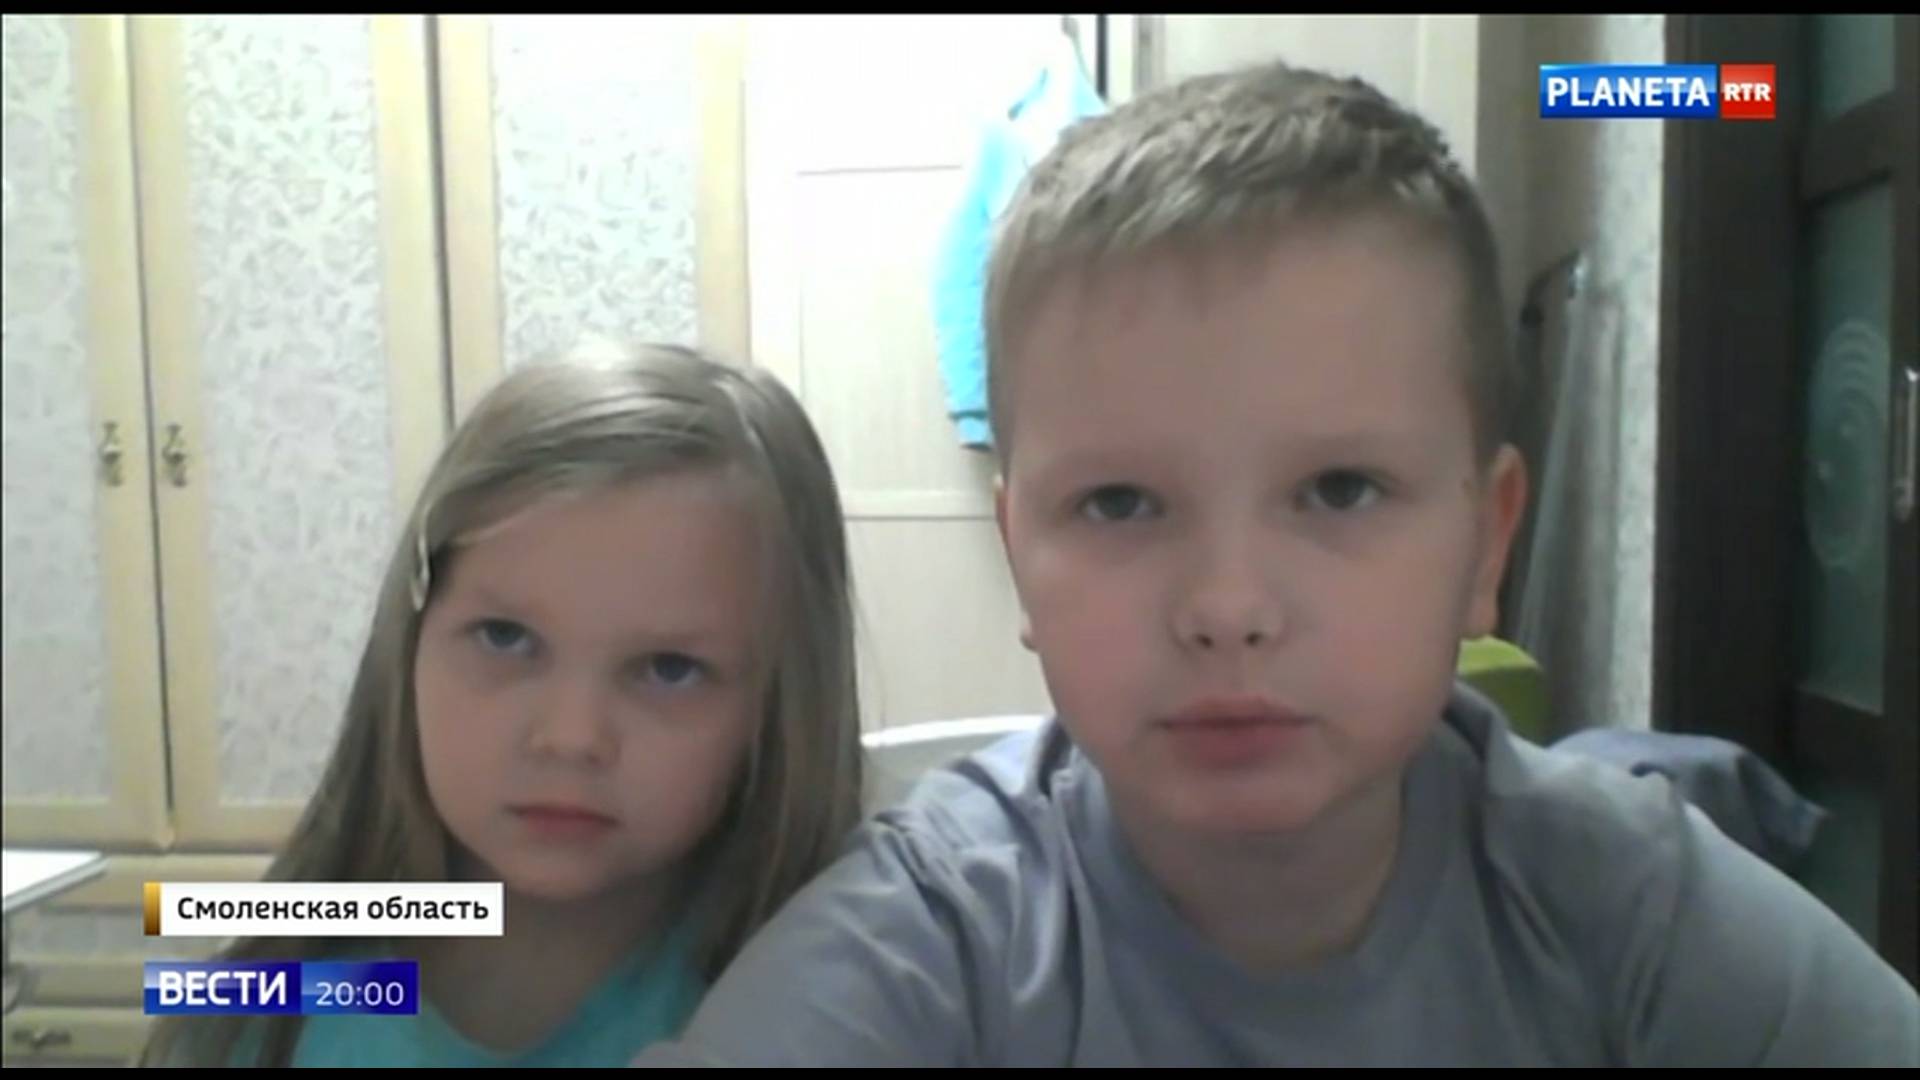 Dwoje dzieci patrzy w ekran iu nagrywa przesłanie do Putina